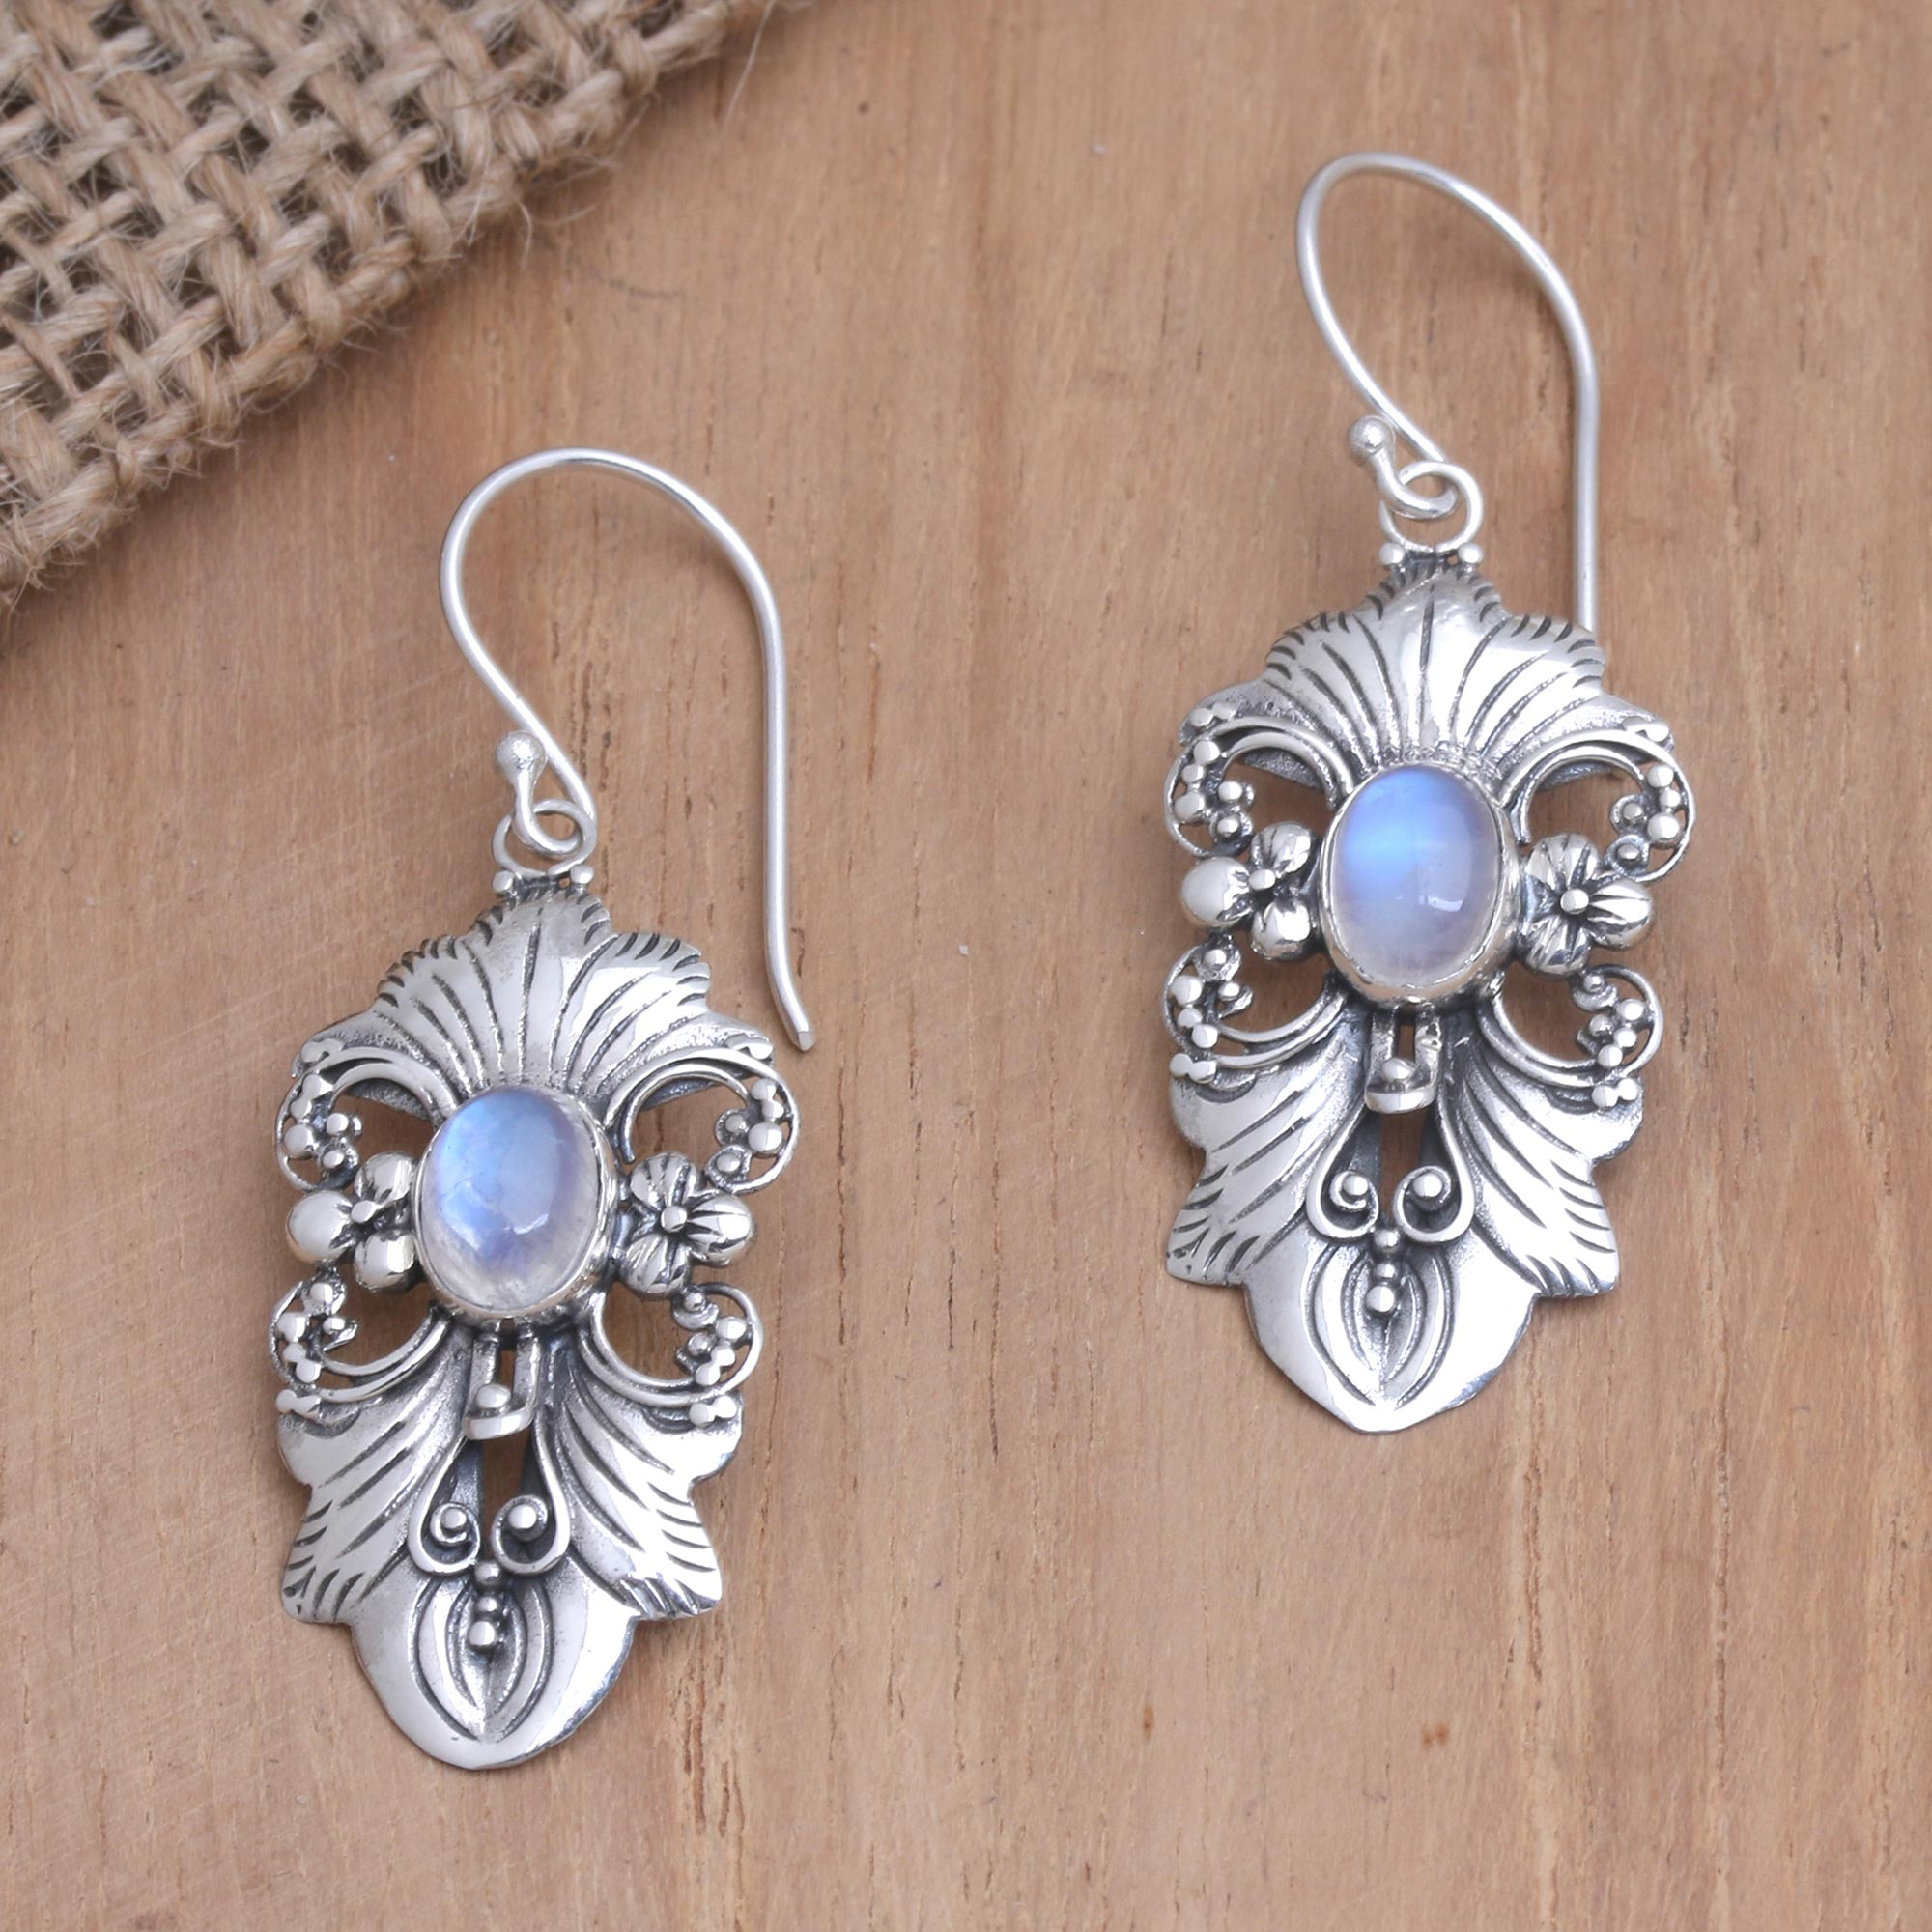 SILVER 925 925 silver earrings blue reflection earrings MOONSTONE moonstone earrings